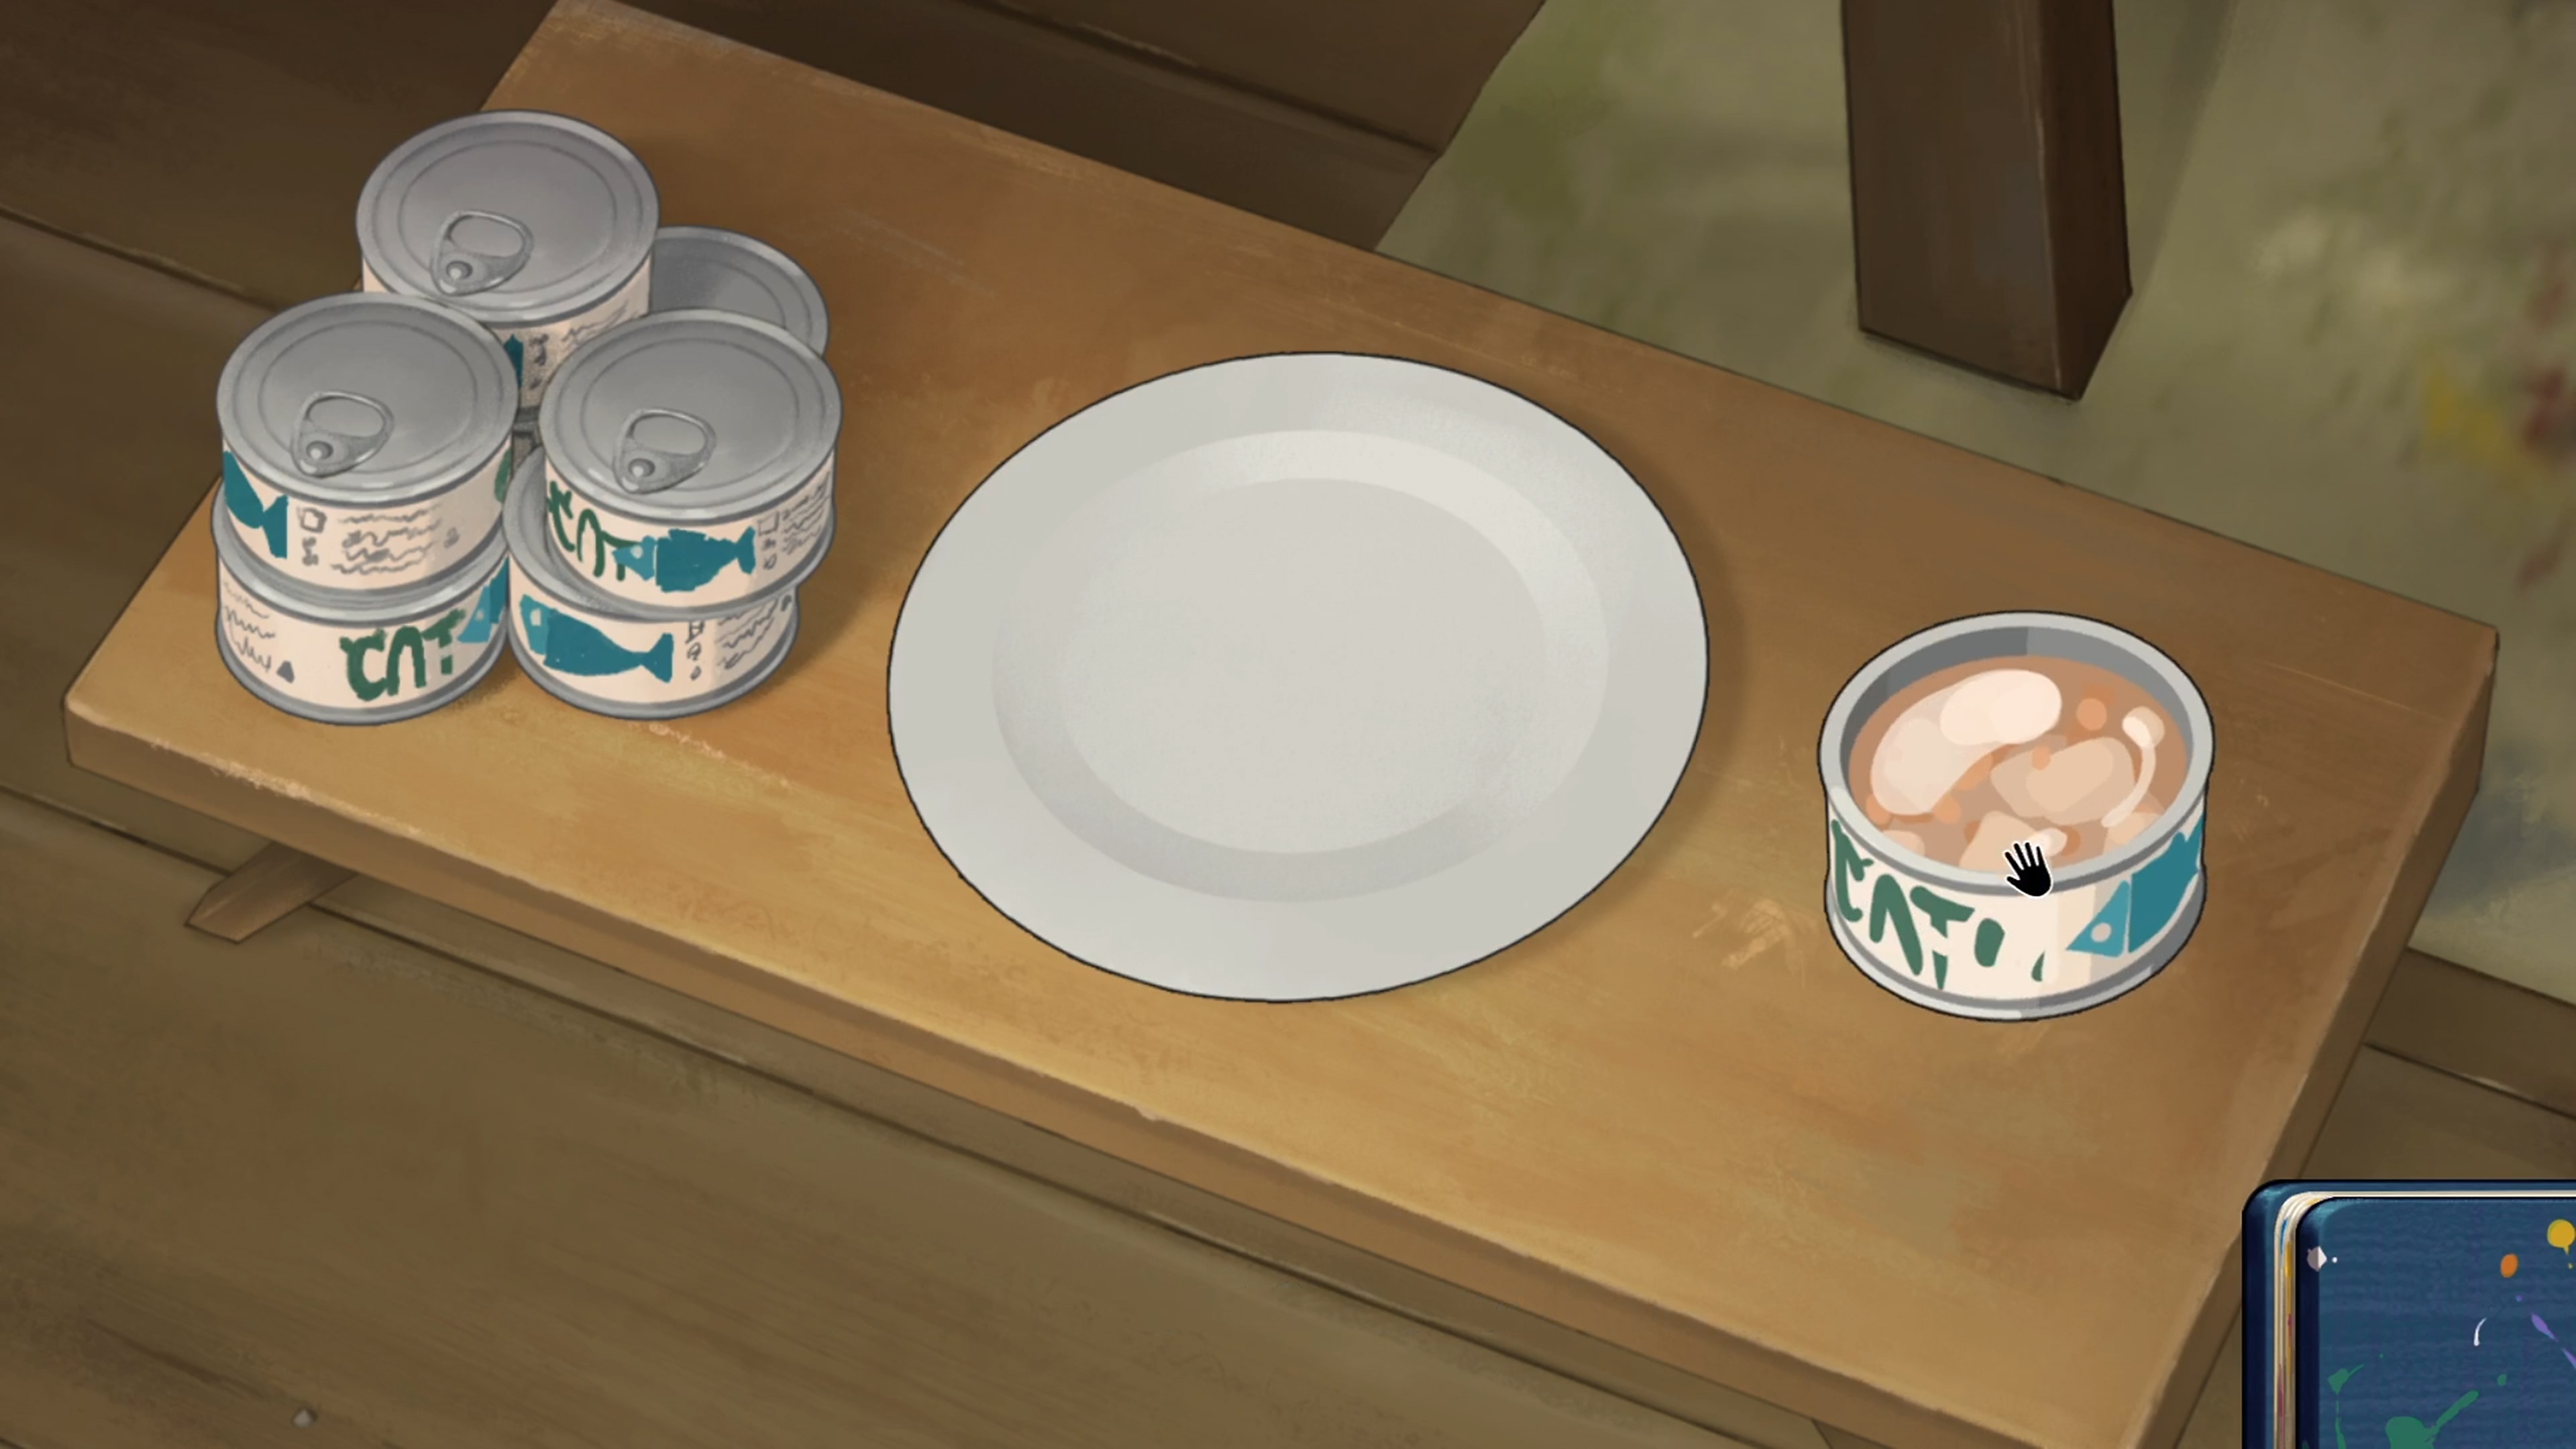 Behind the Frame: Il paesaggio più bello - Istantanea della schermata che mostra un piatto e scatolette di cibo per gatti su un tavolo